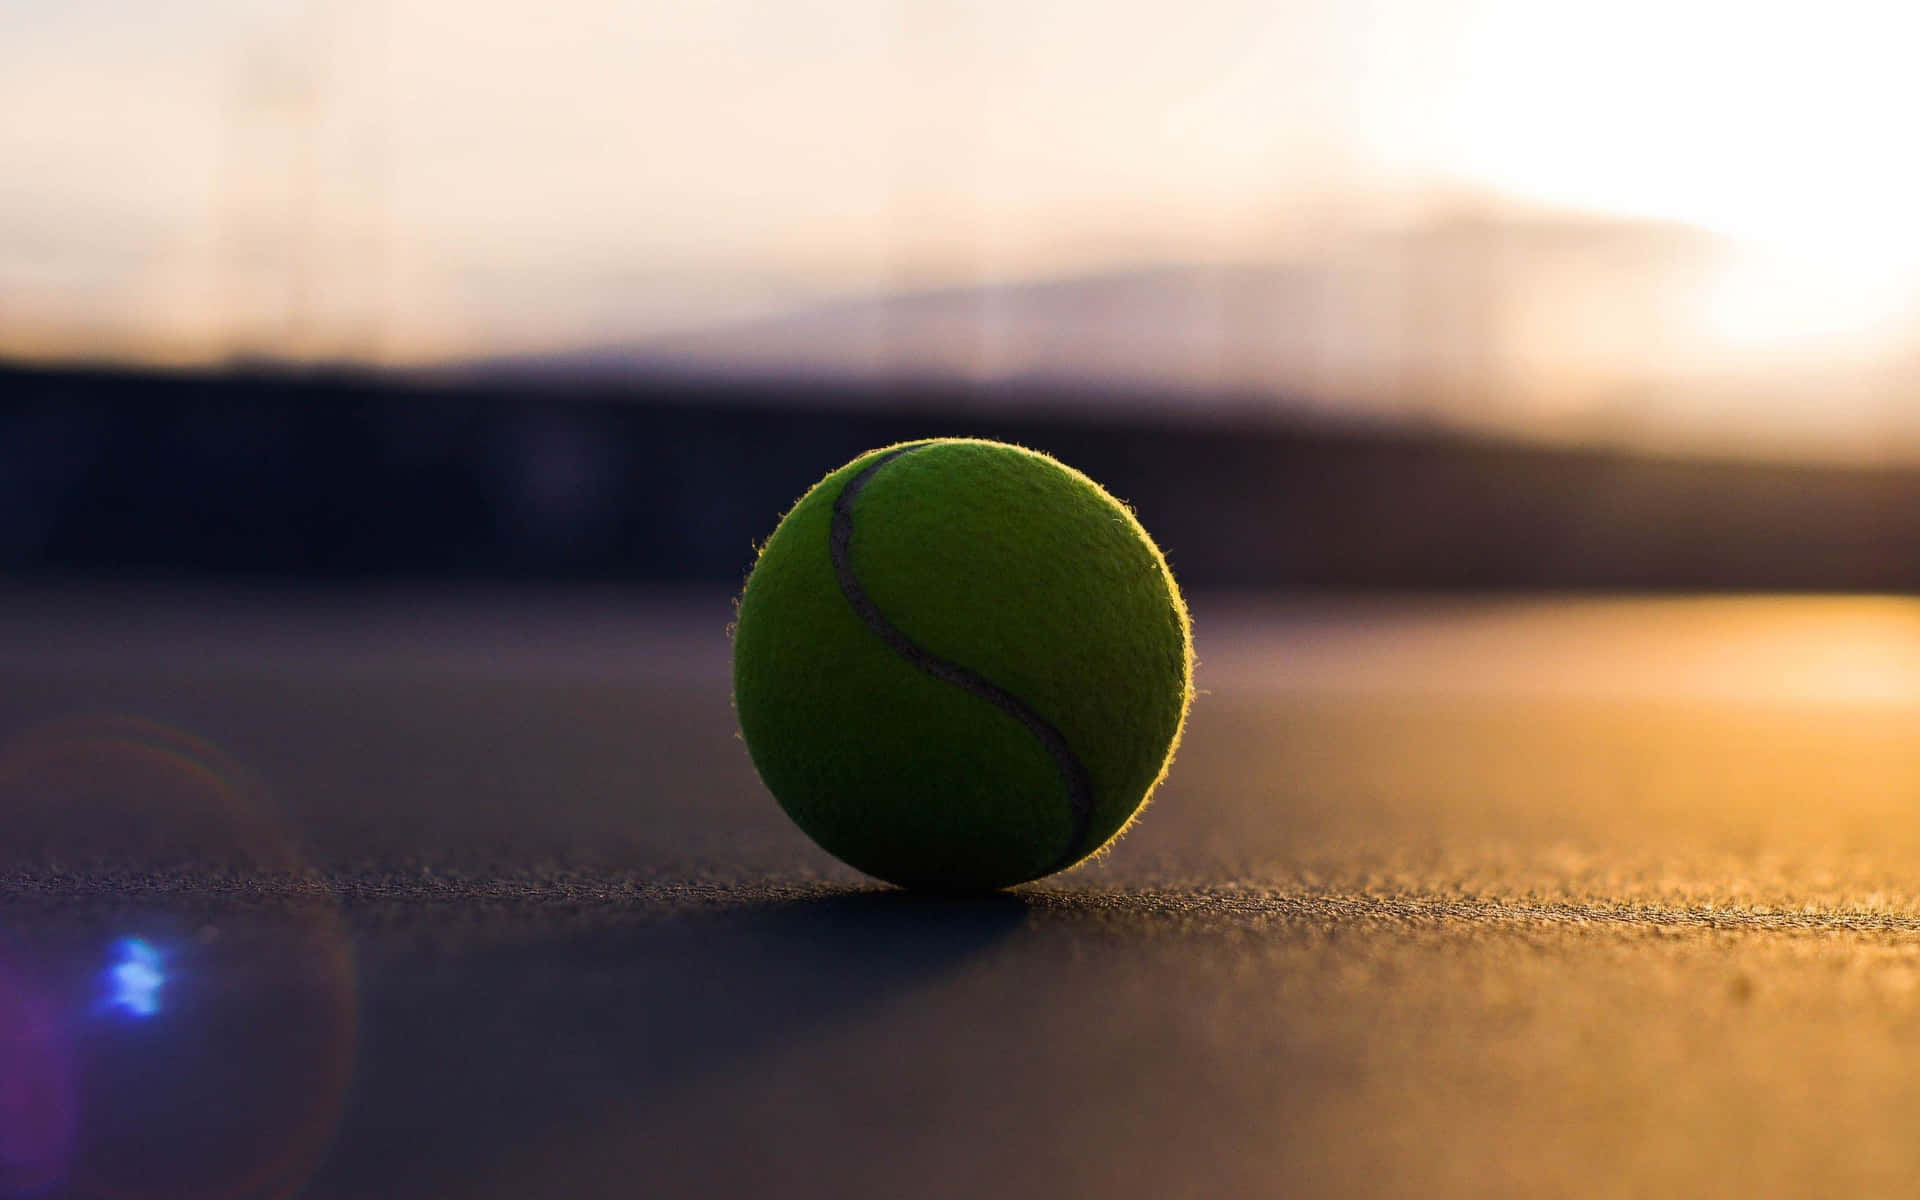 Et frisk tenniskugle liggende på en græsmark klar til spil Wallpaper